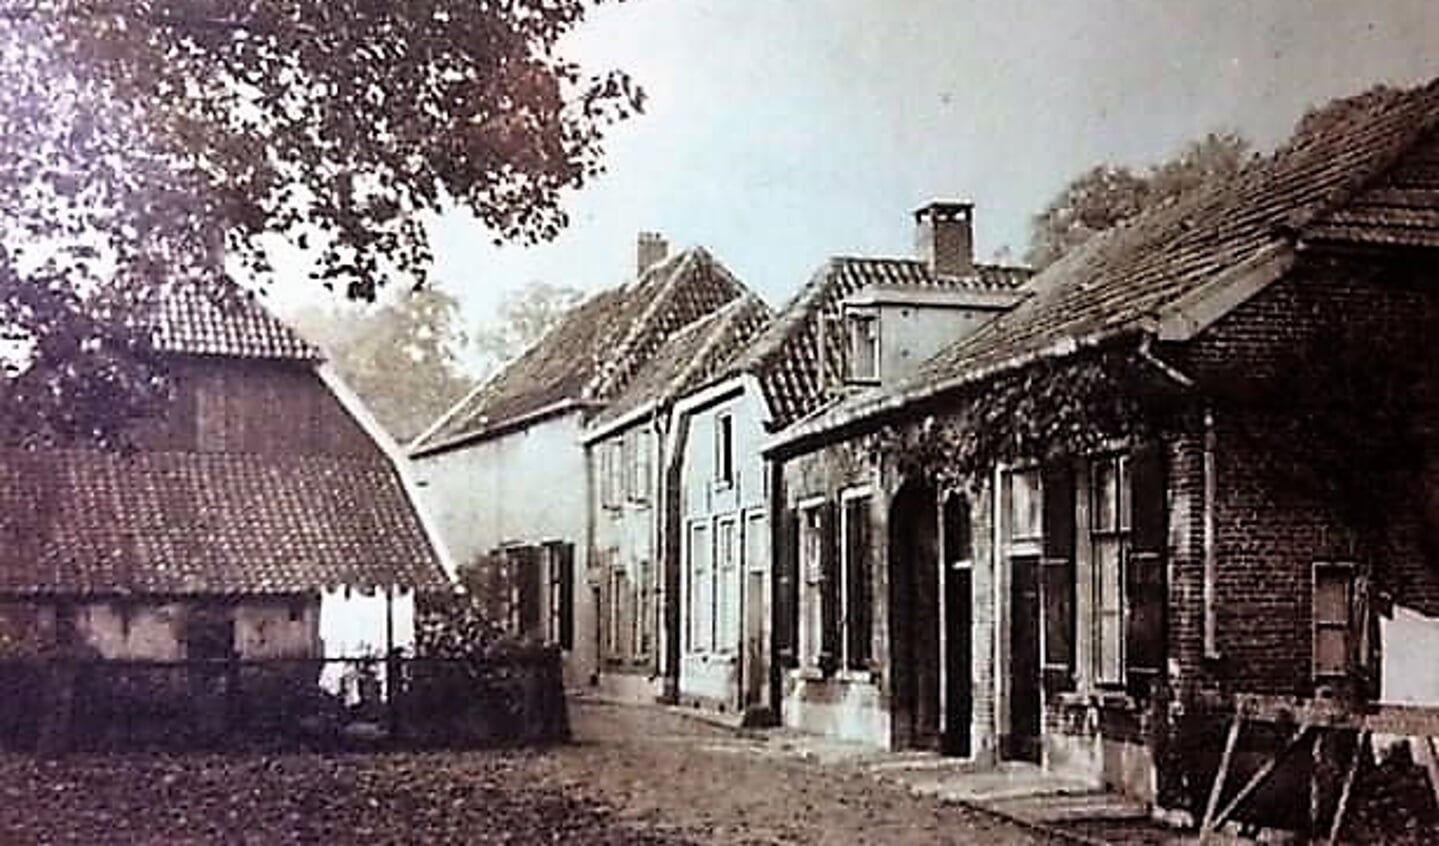 Het ouderlijk huis (rechts) van de familie Frank in vroegere jaren aan de Barakkenplaats. Foto: archief familie Frank